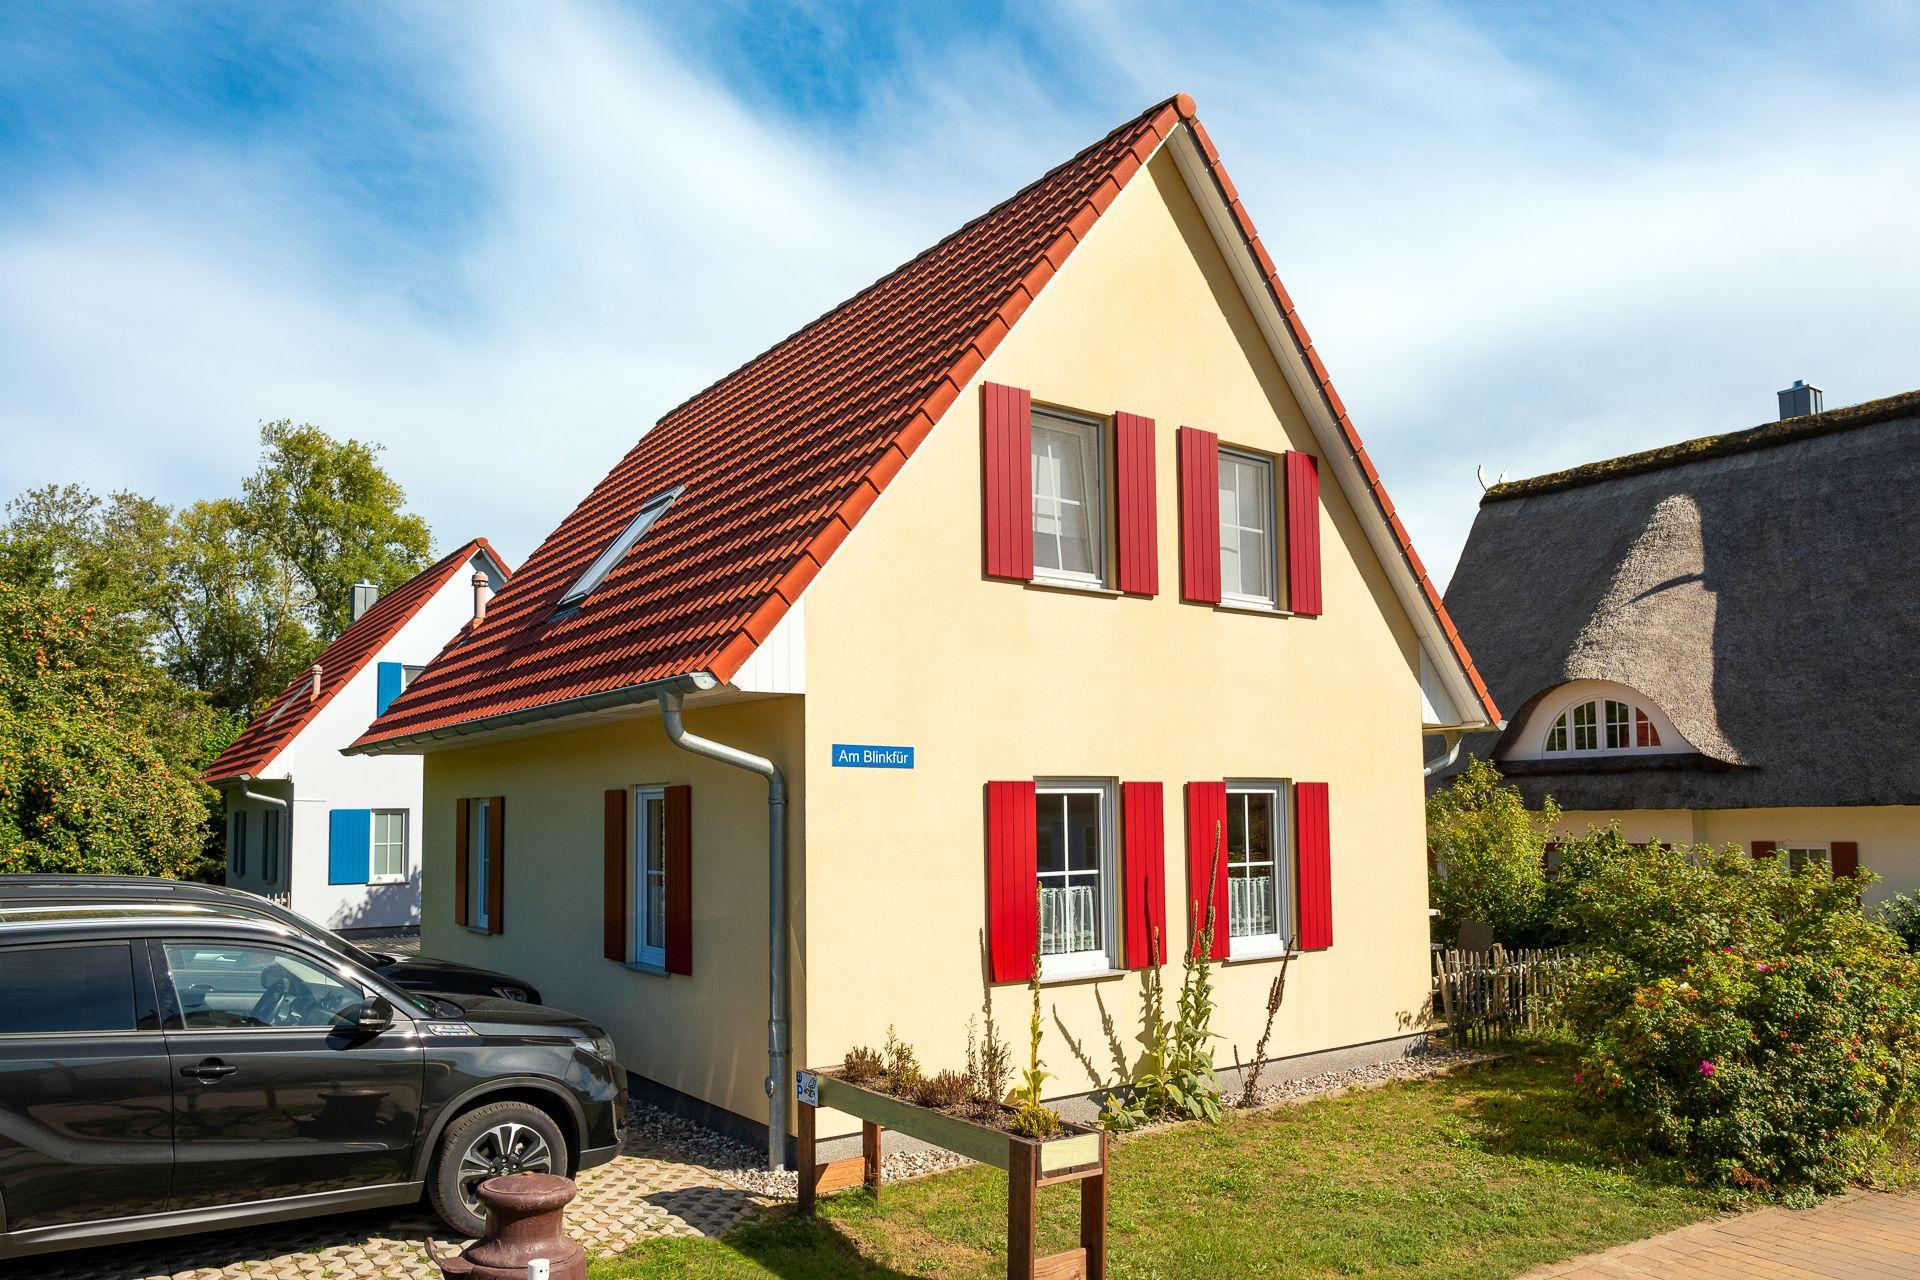 Ferienhaus für 7 Personen 1 Kind ca 80 m² in Beckerwitz Ostseeküste Deutschland Wismarer Bucht